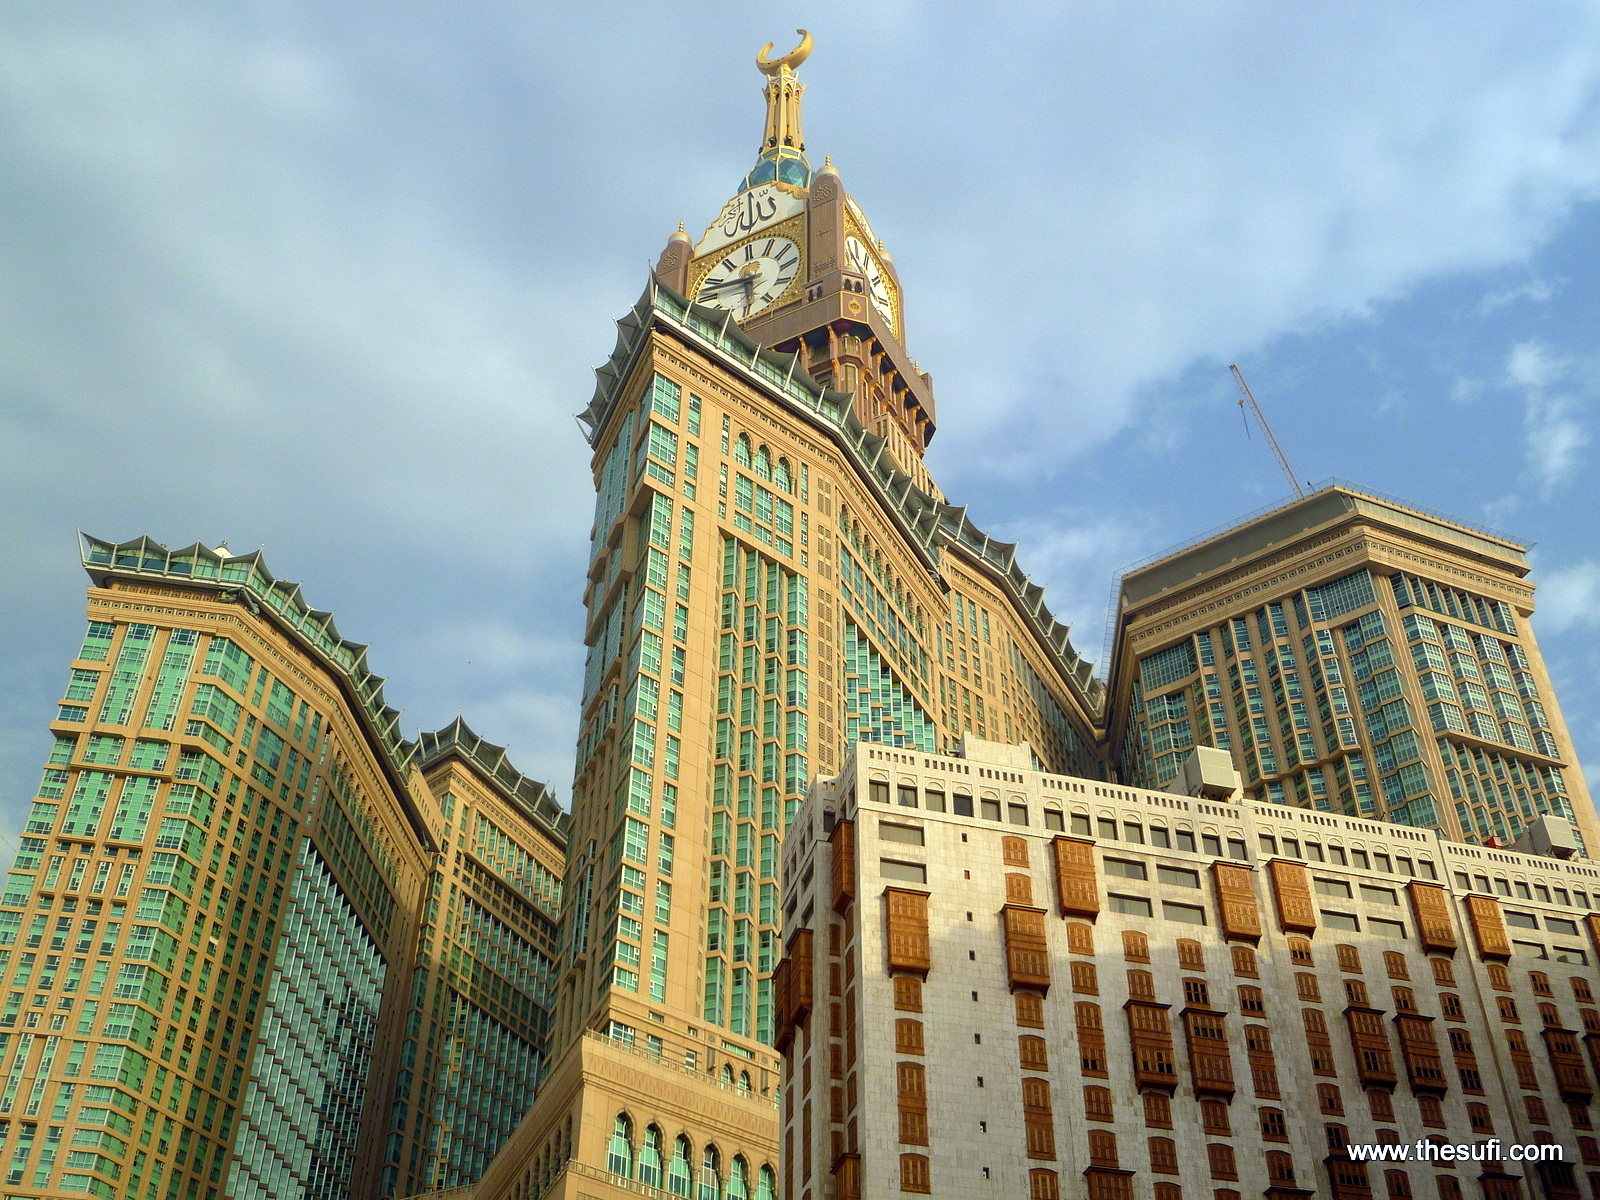 Makkah_clock_tower.jpg  TheSufi.com